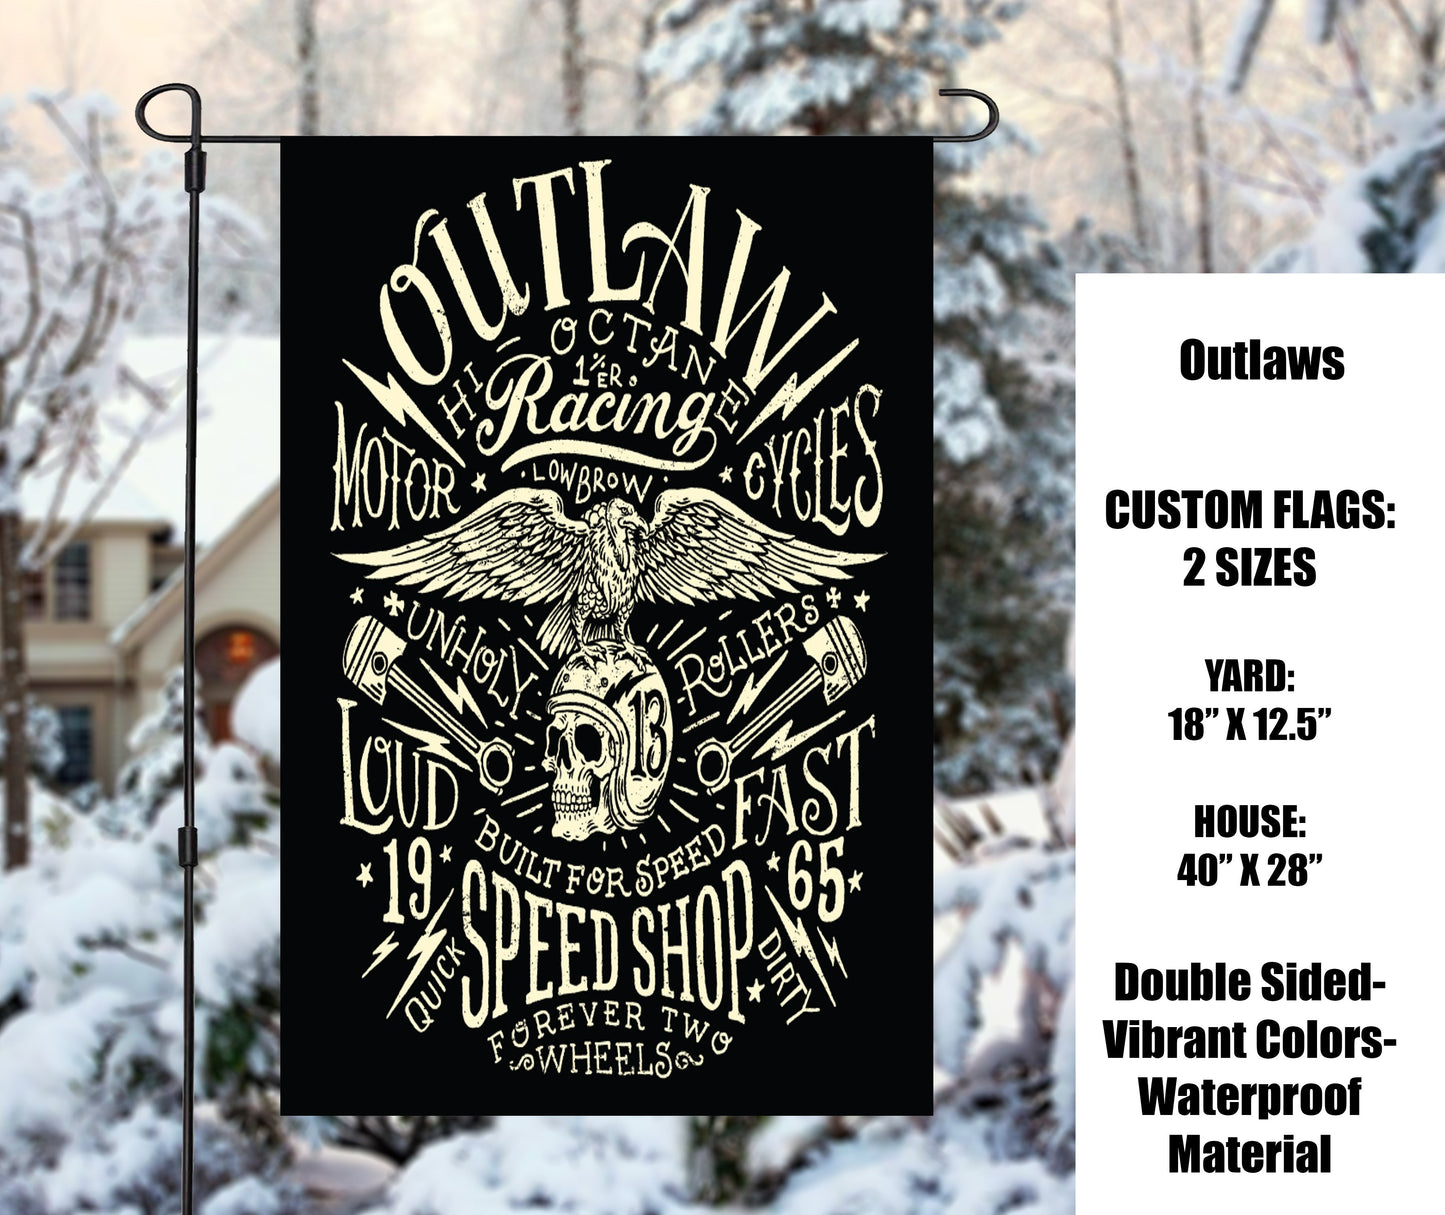 Outlaws Garden Flags - Preorder Closes 9/29